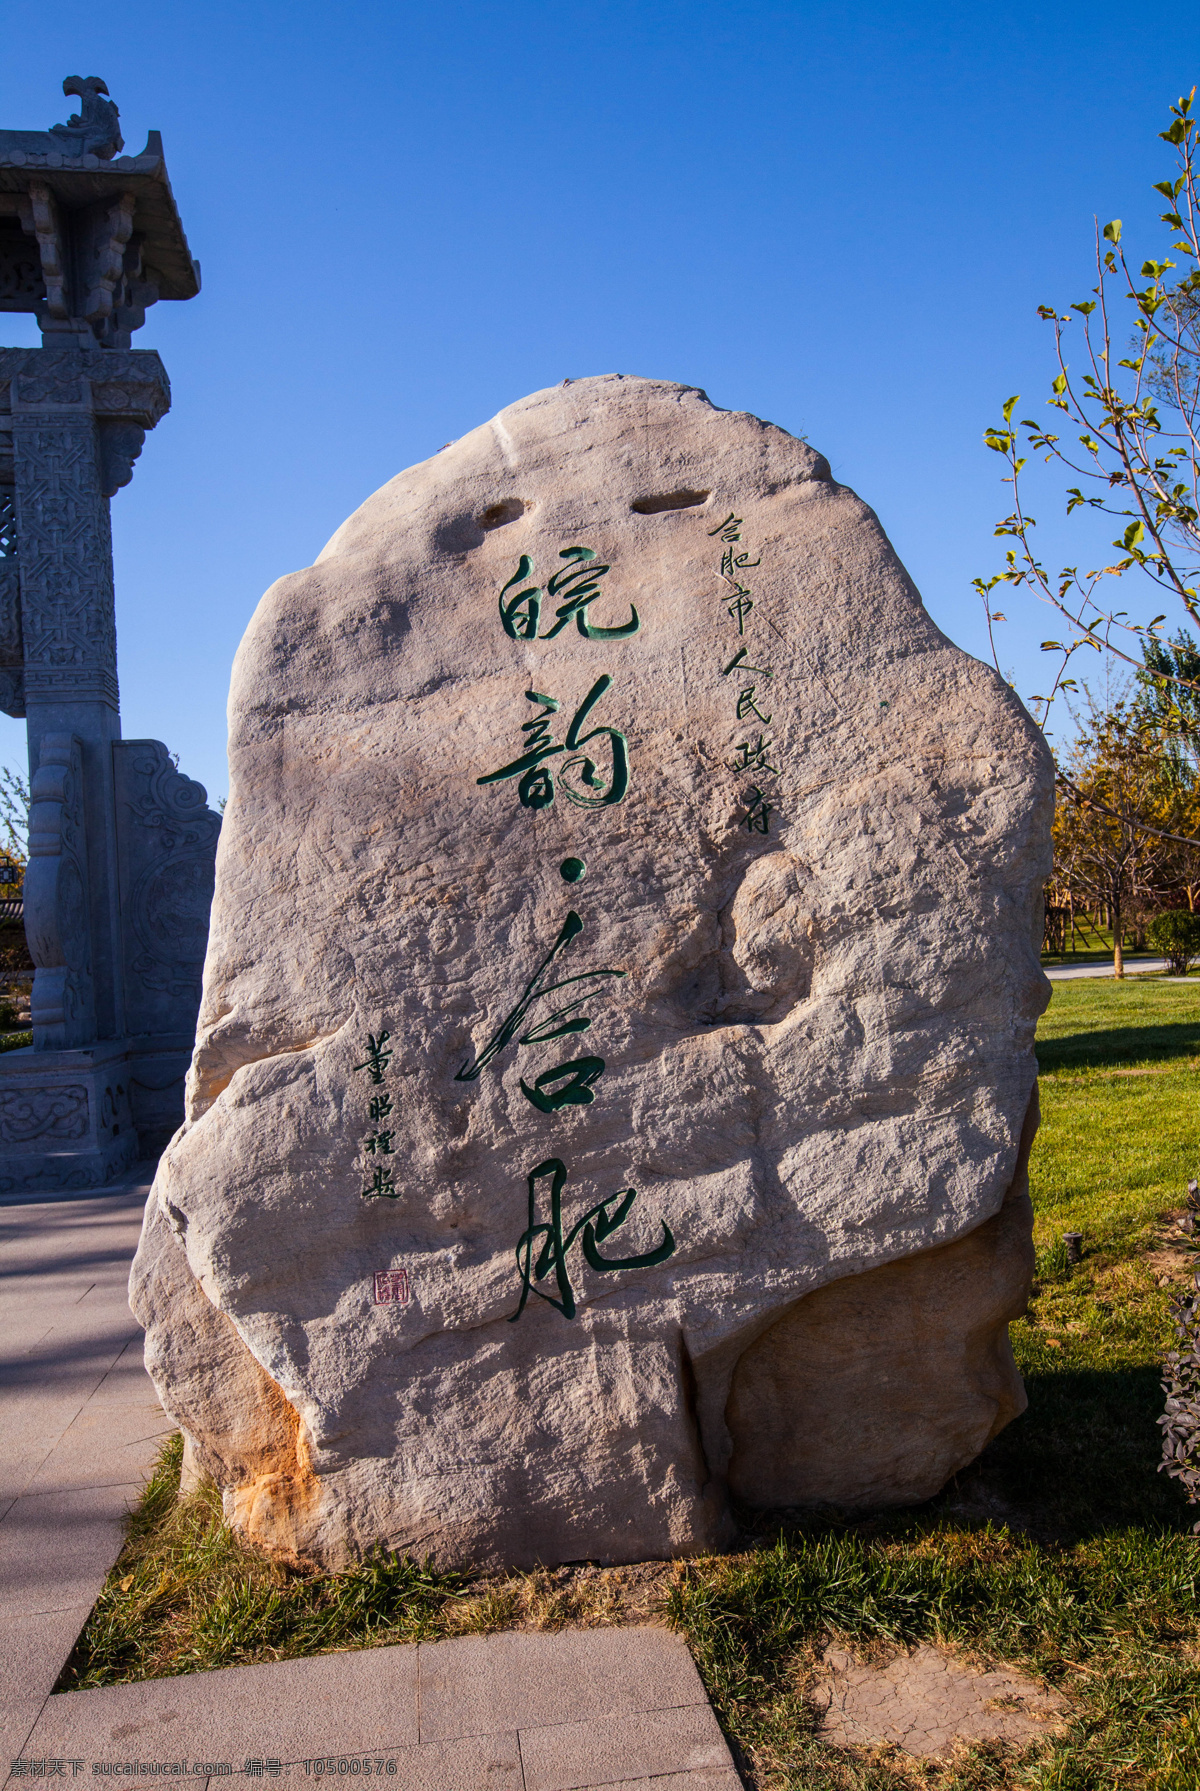 北京 国内旅游 蓝天 旅游 旅游摄影 石头 园林艺术 北京园博园 合肥园 园博园 中国园林 园林展览 第九届园博会 装饰素材 展示设计